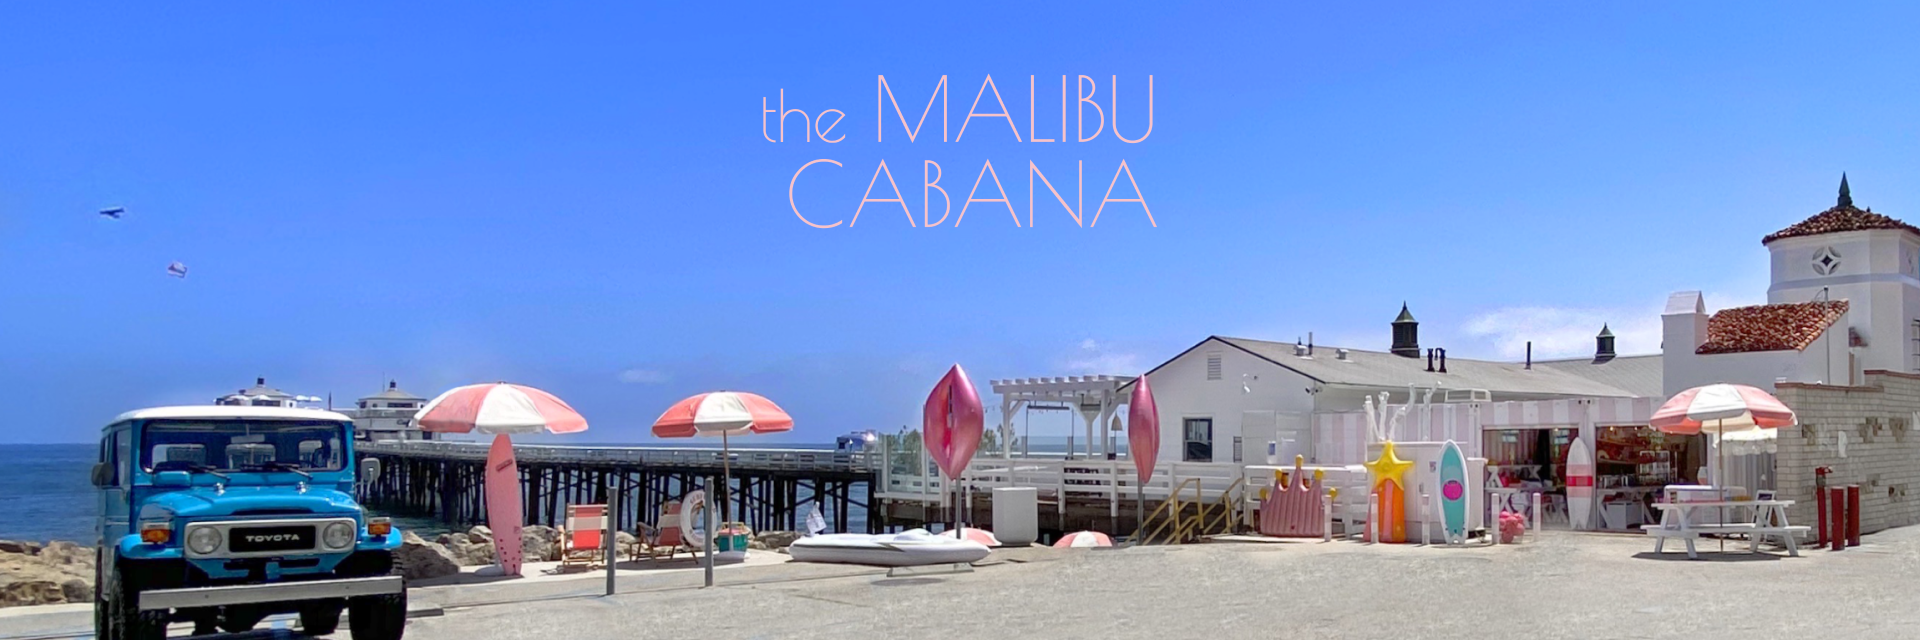 Malibu Cabana | Image of shopping locations and vendors